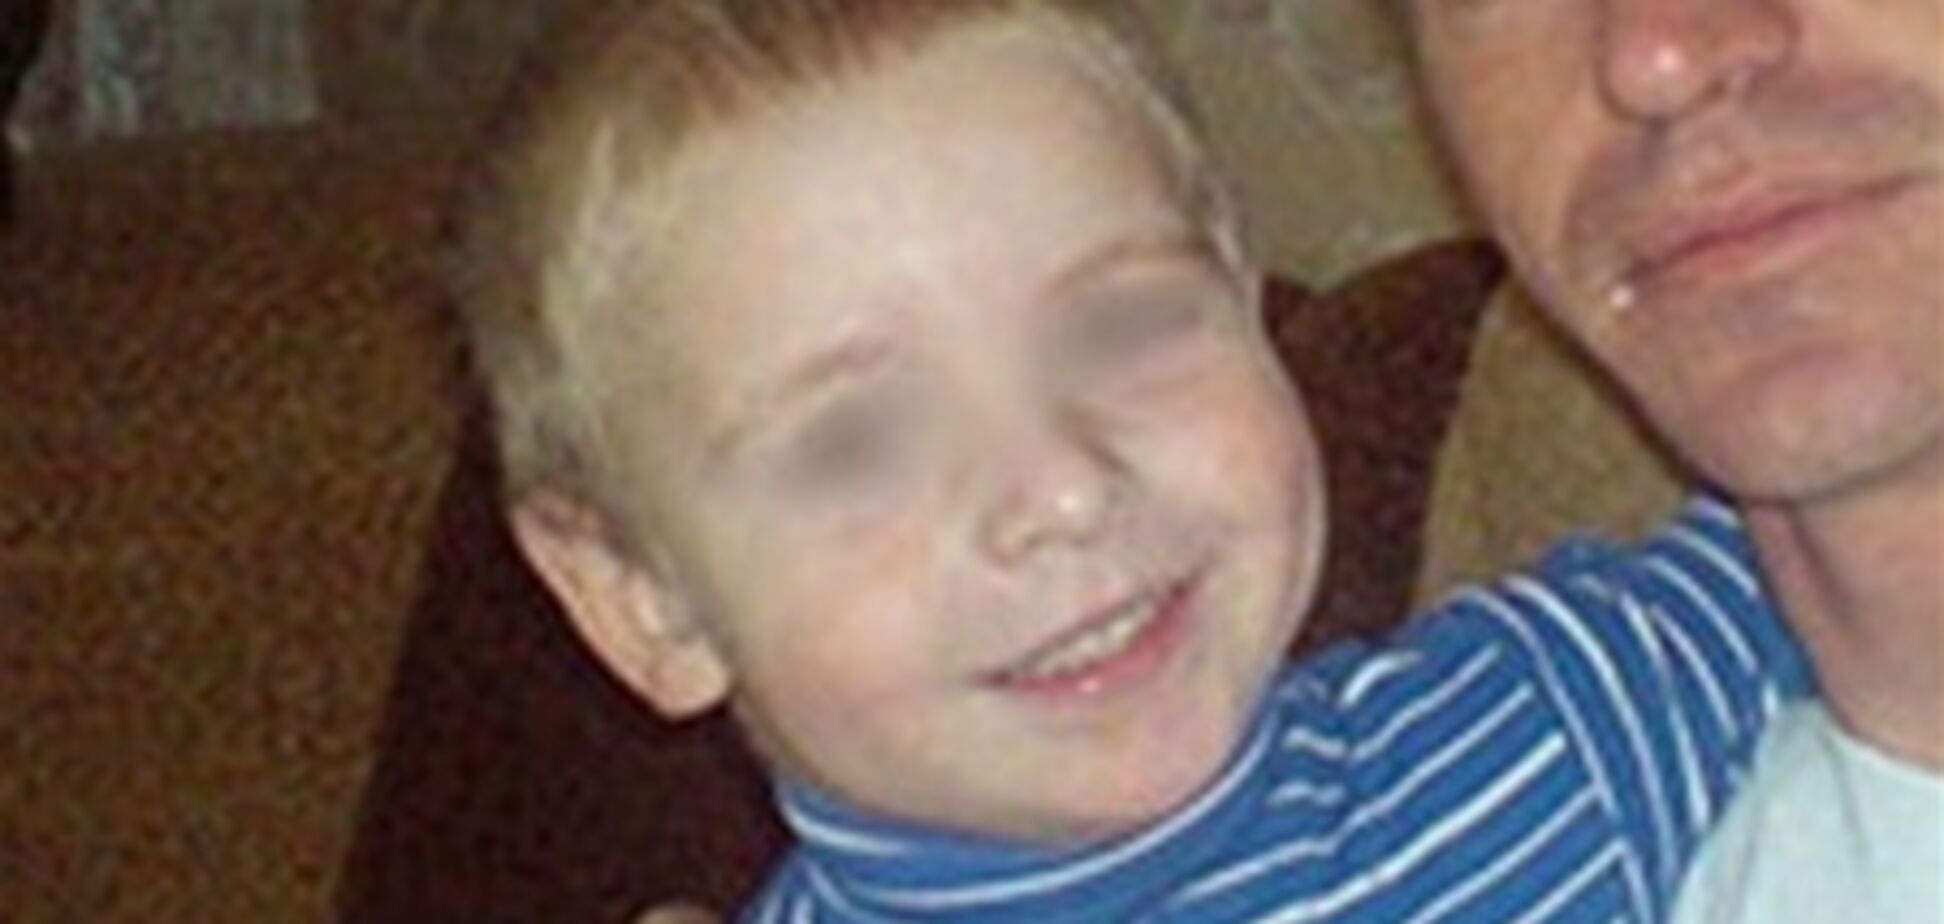 Скандал с массовым менингитом в Ростове: умер ребенок, возбуждено дело